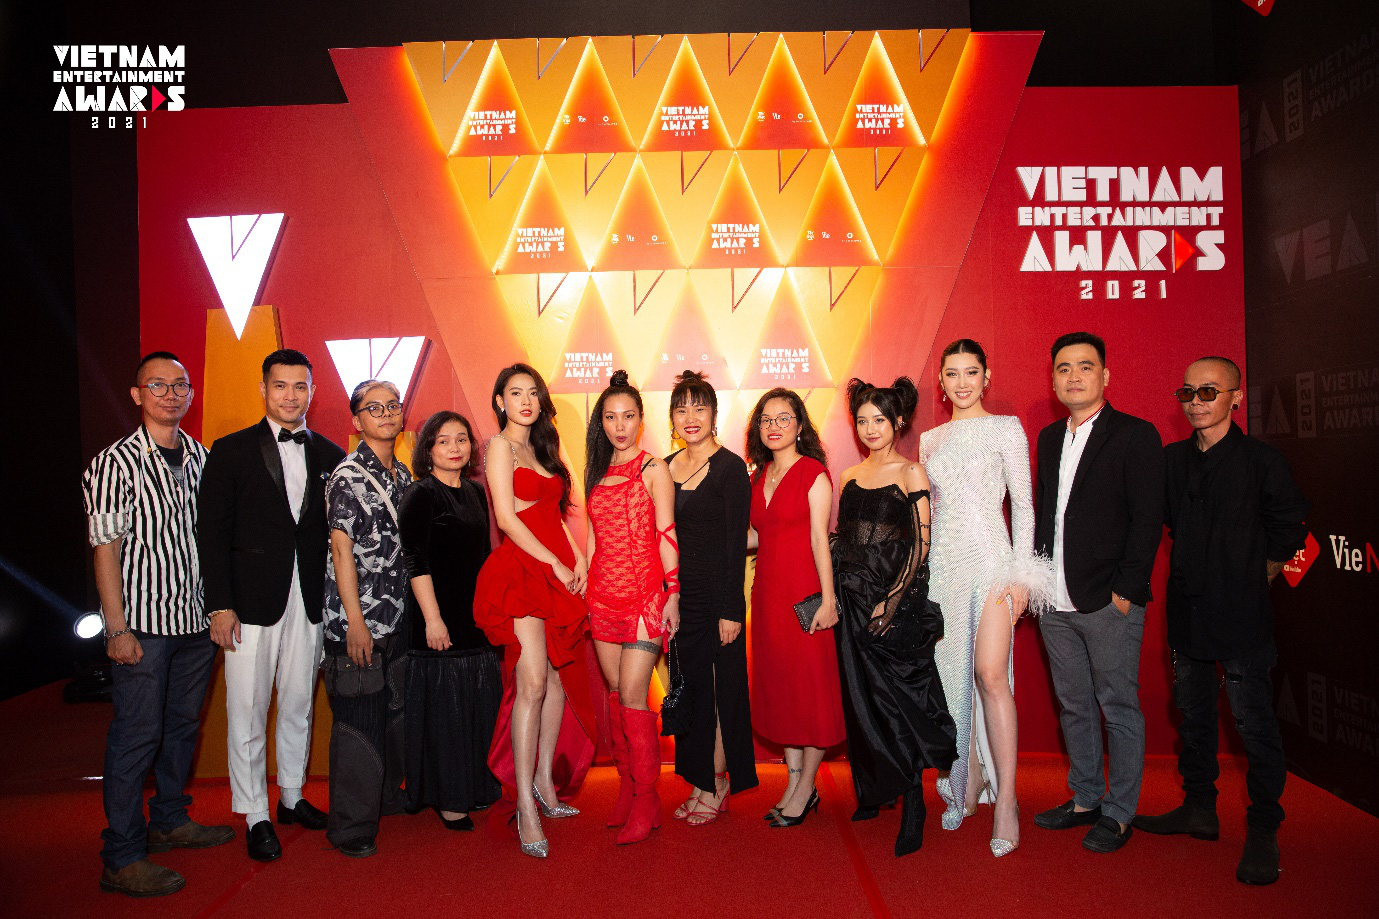 Đêm Gala Trao Giải sự kiện Vietnam Entertainment Awards 2021 - nơi những tài năng được tôn vinh - Ảnh 1.